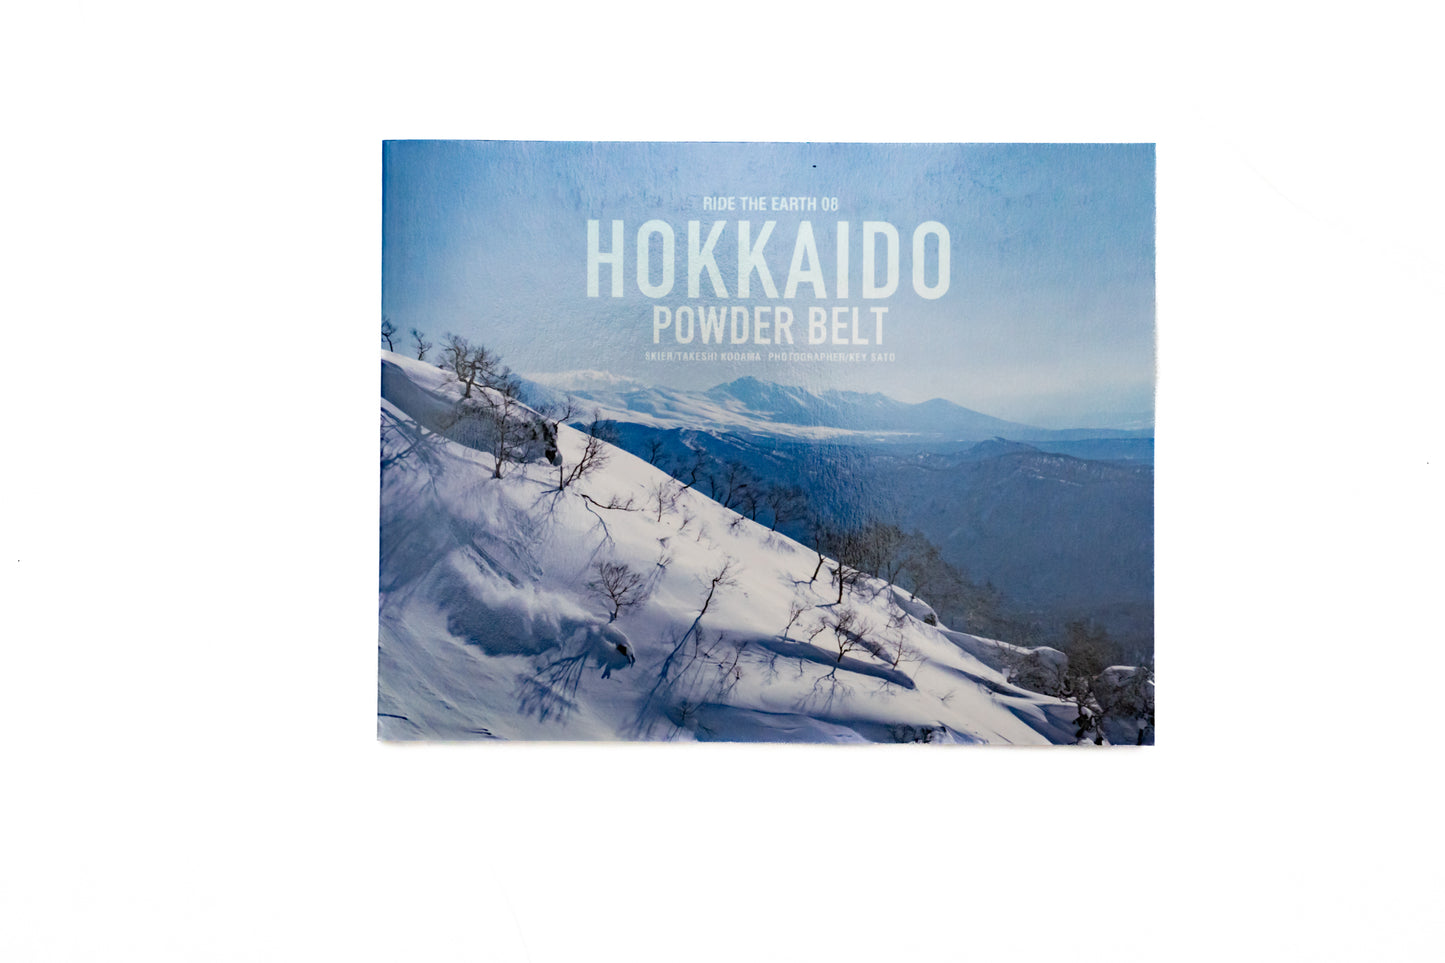 Hokkaido powder belt Photobook